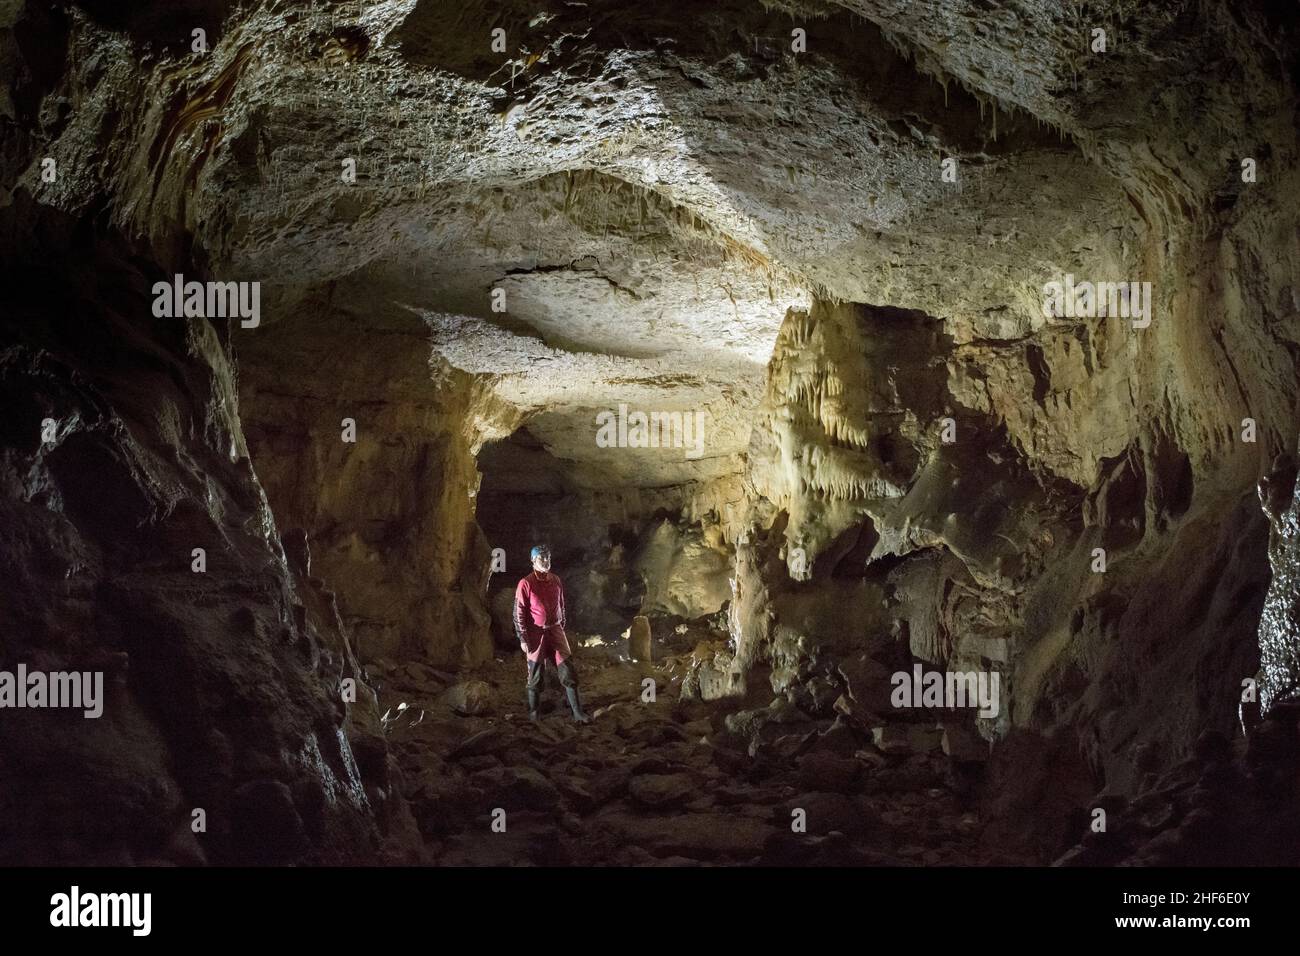 Grotta di stalattiti in Francia, Grotte des Orcieres Foto Stock